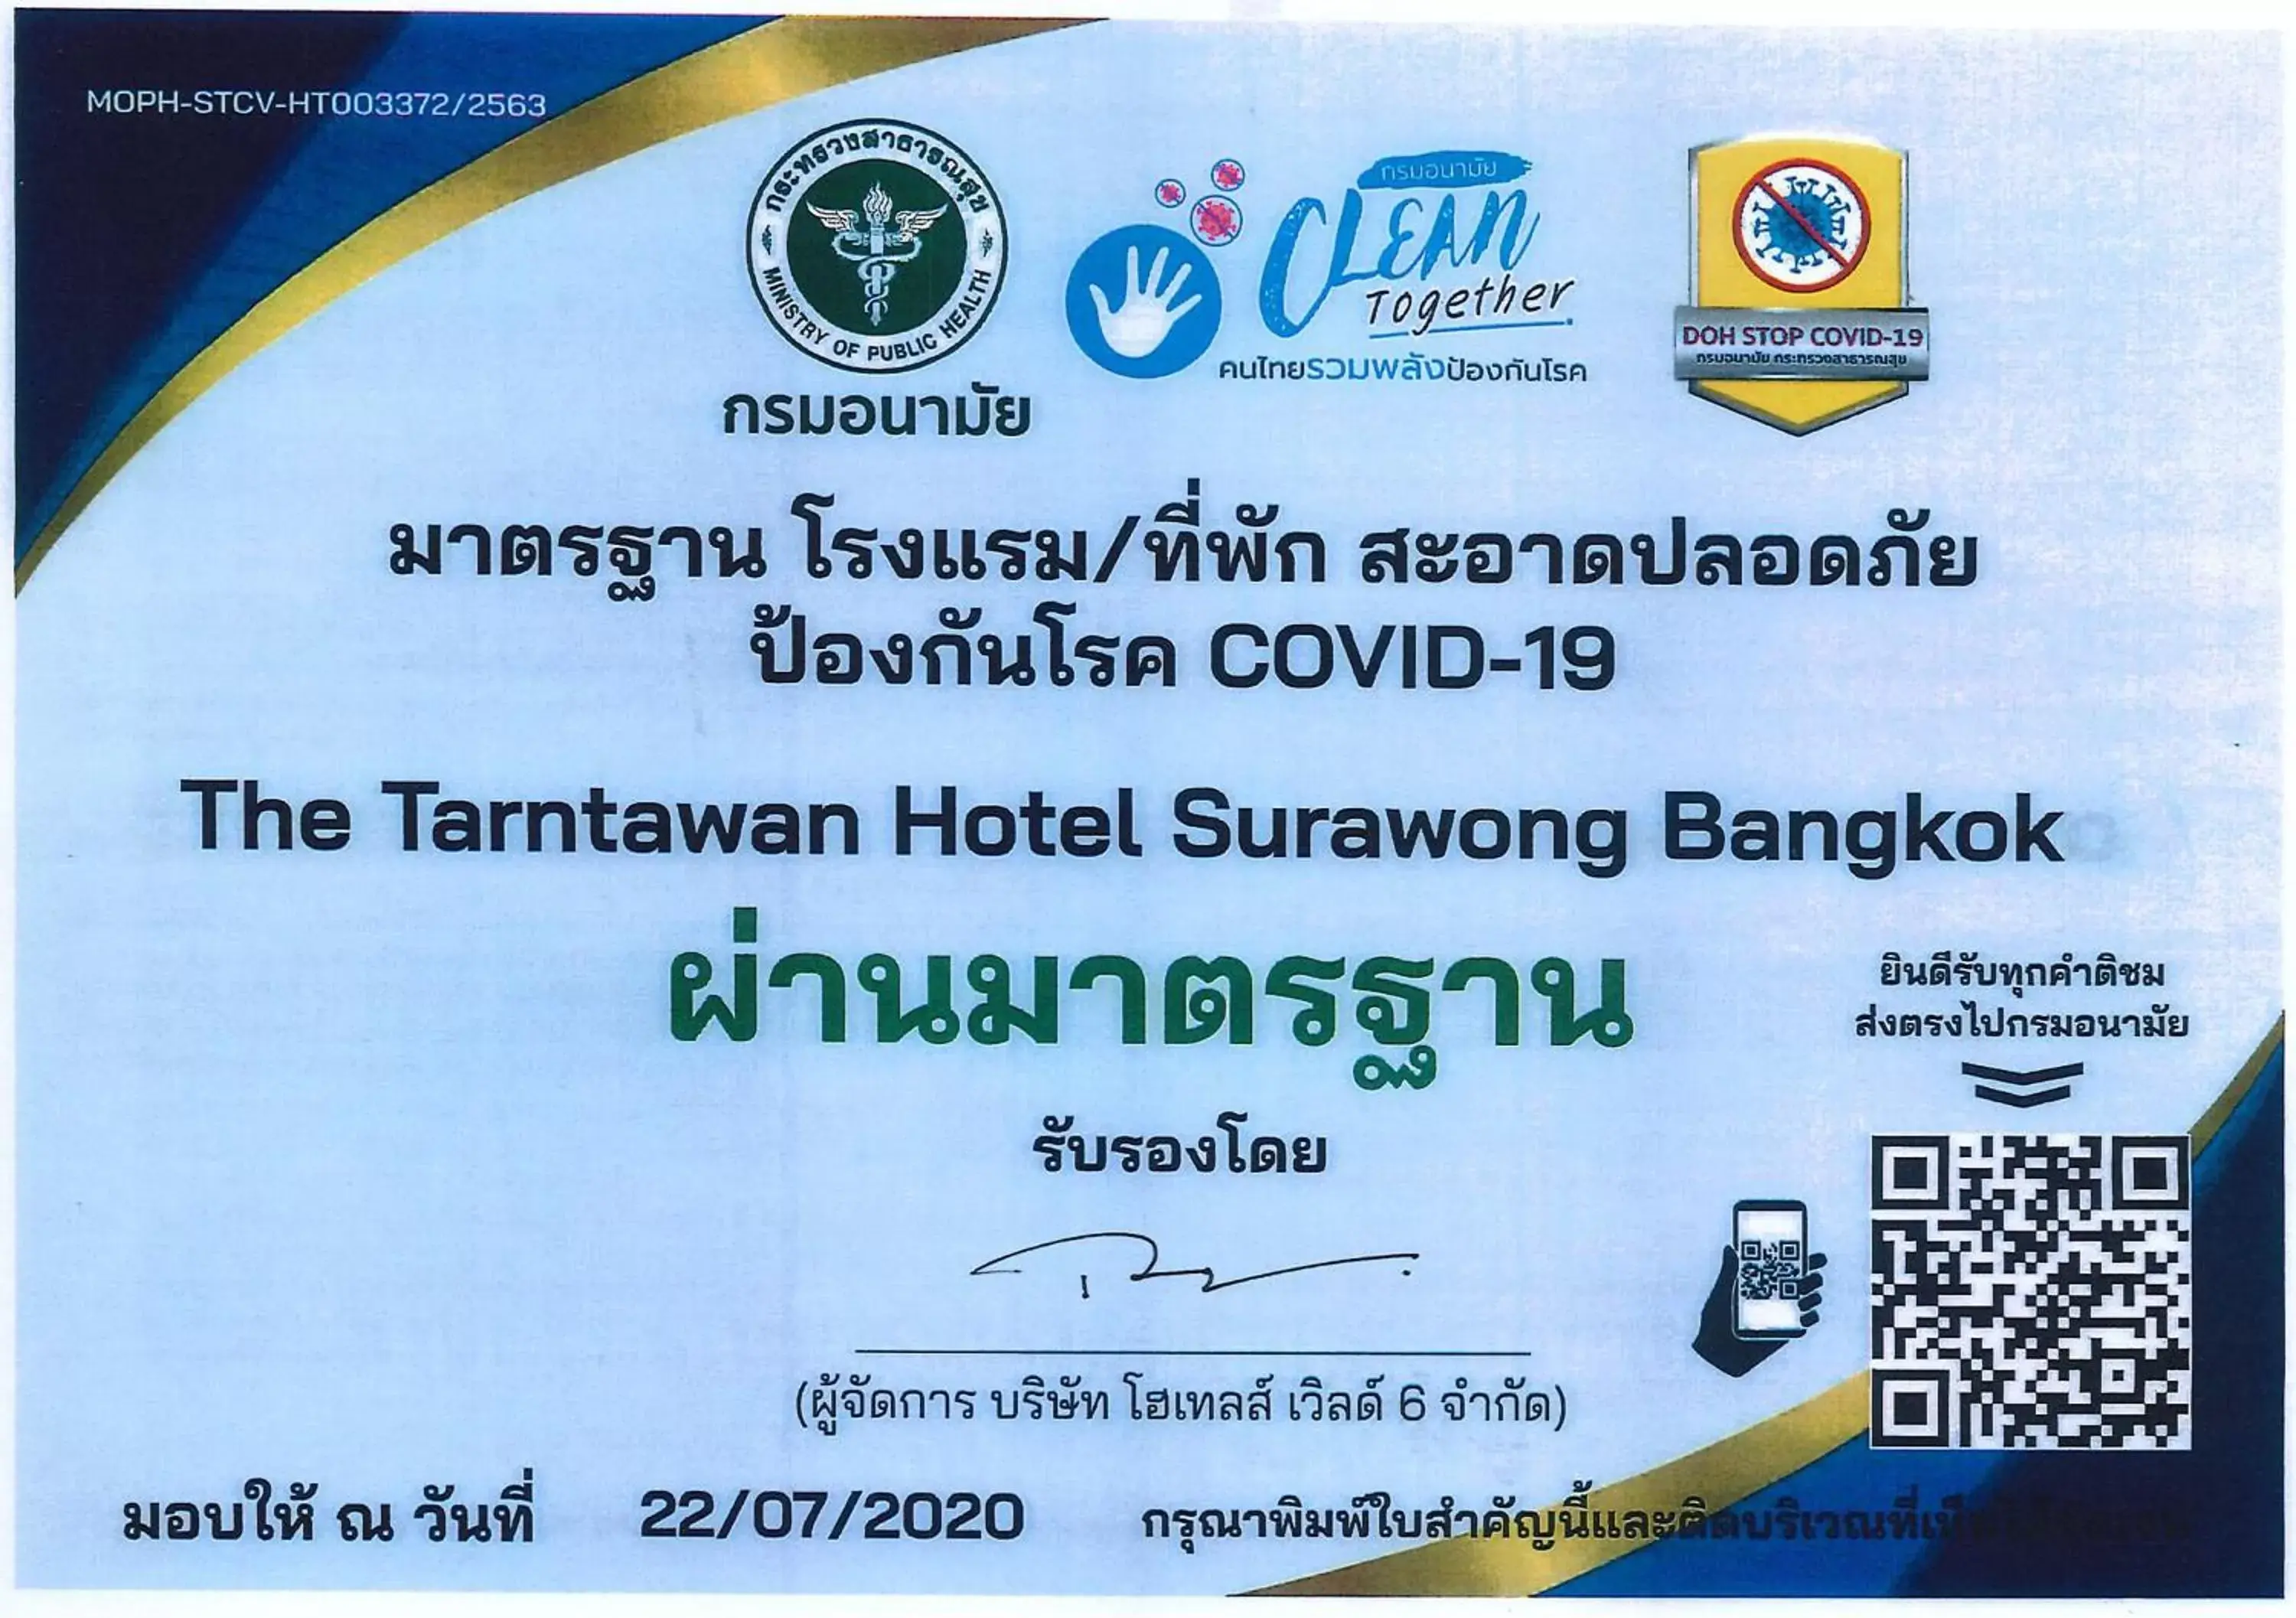 Logo/Certificate/Sign in The Tarntawan Hotel Surawong Bangkok